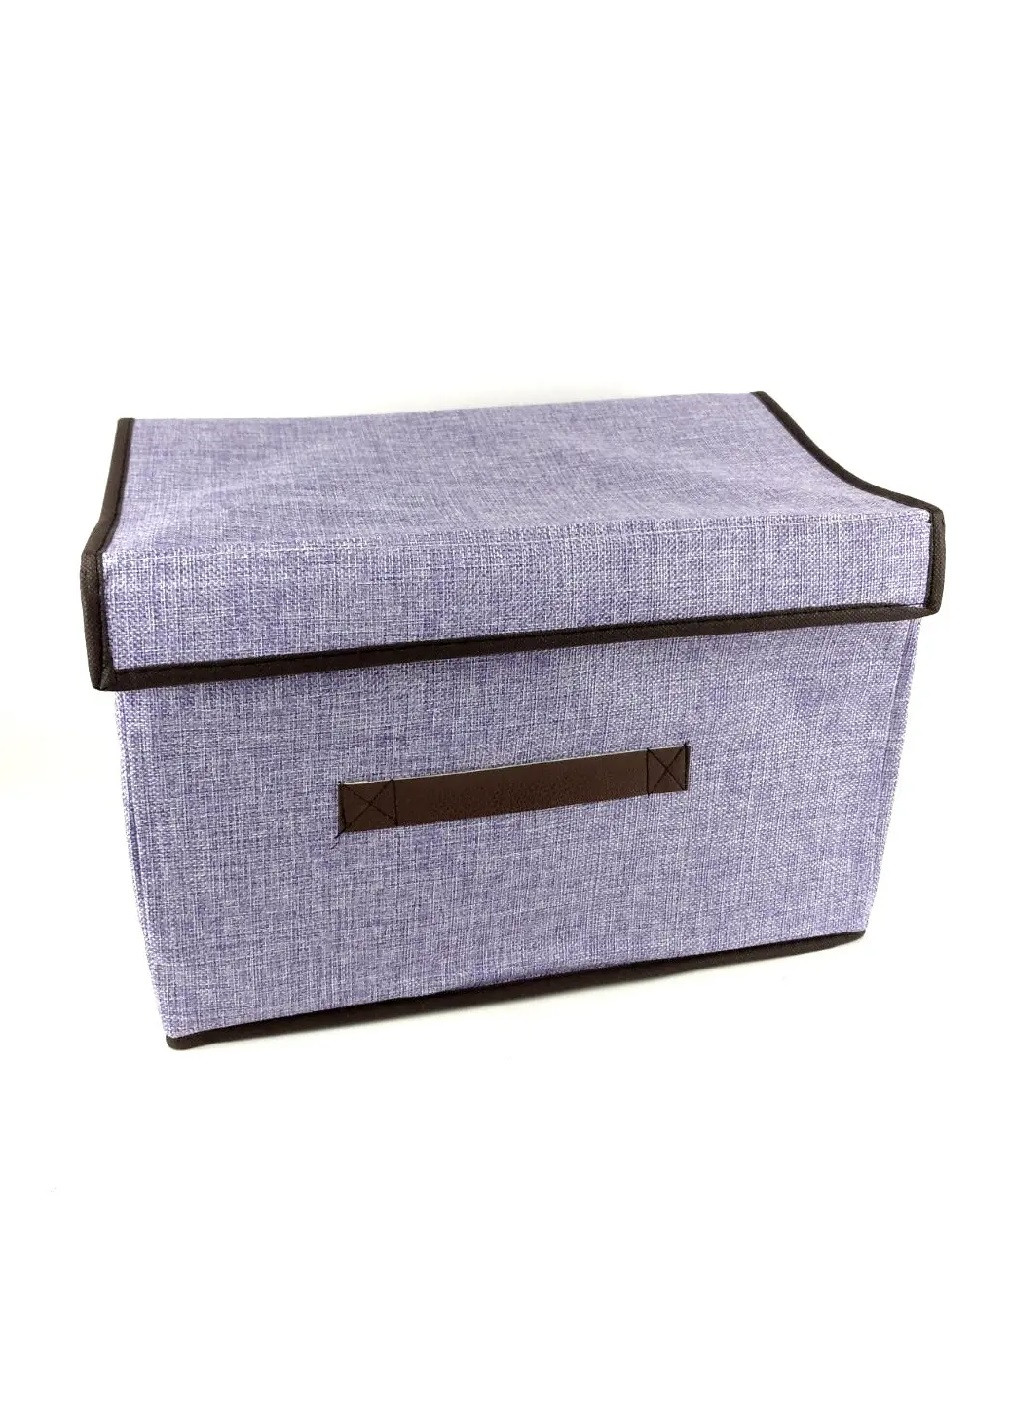 Органайзер короб ящик бокс для хранения вещей одежды белья игрушек аксессуаров 37х23х23.5 см (475839-Prob) Фиолетовый Unbranded (272097211)